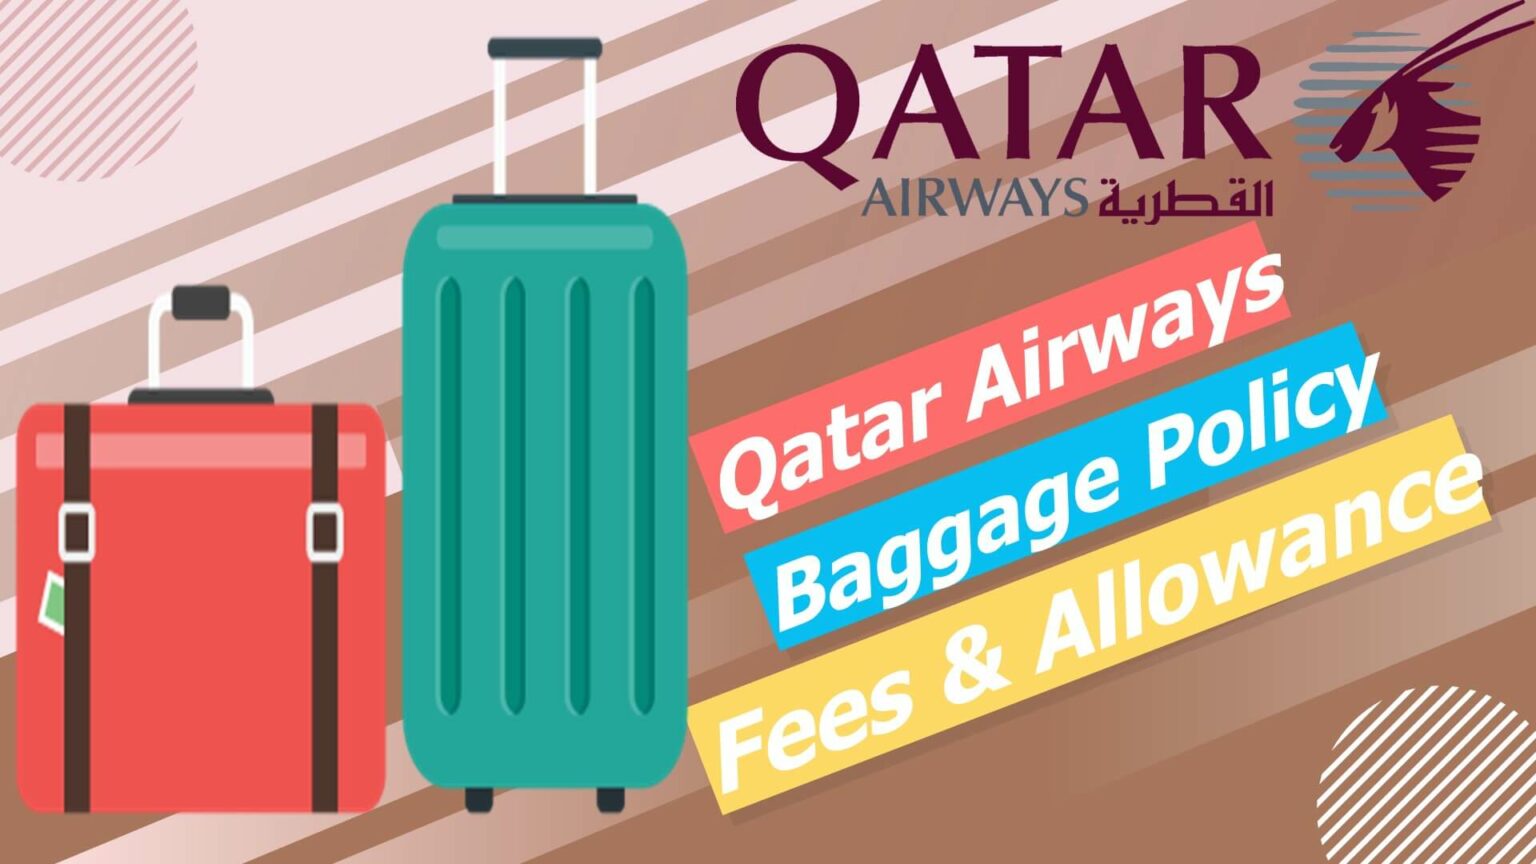 Qatar Airways Baggage Policy Fees & Allowance